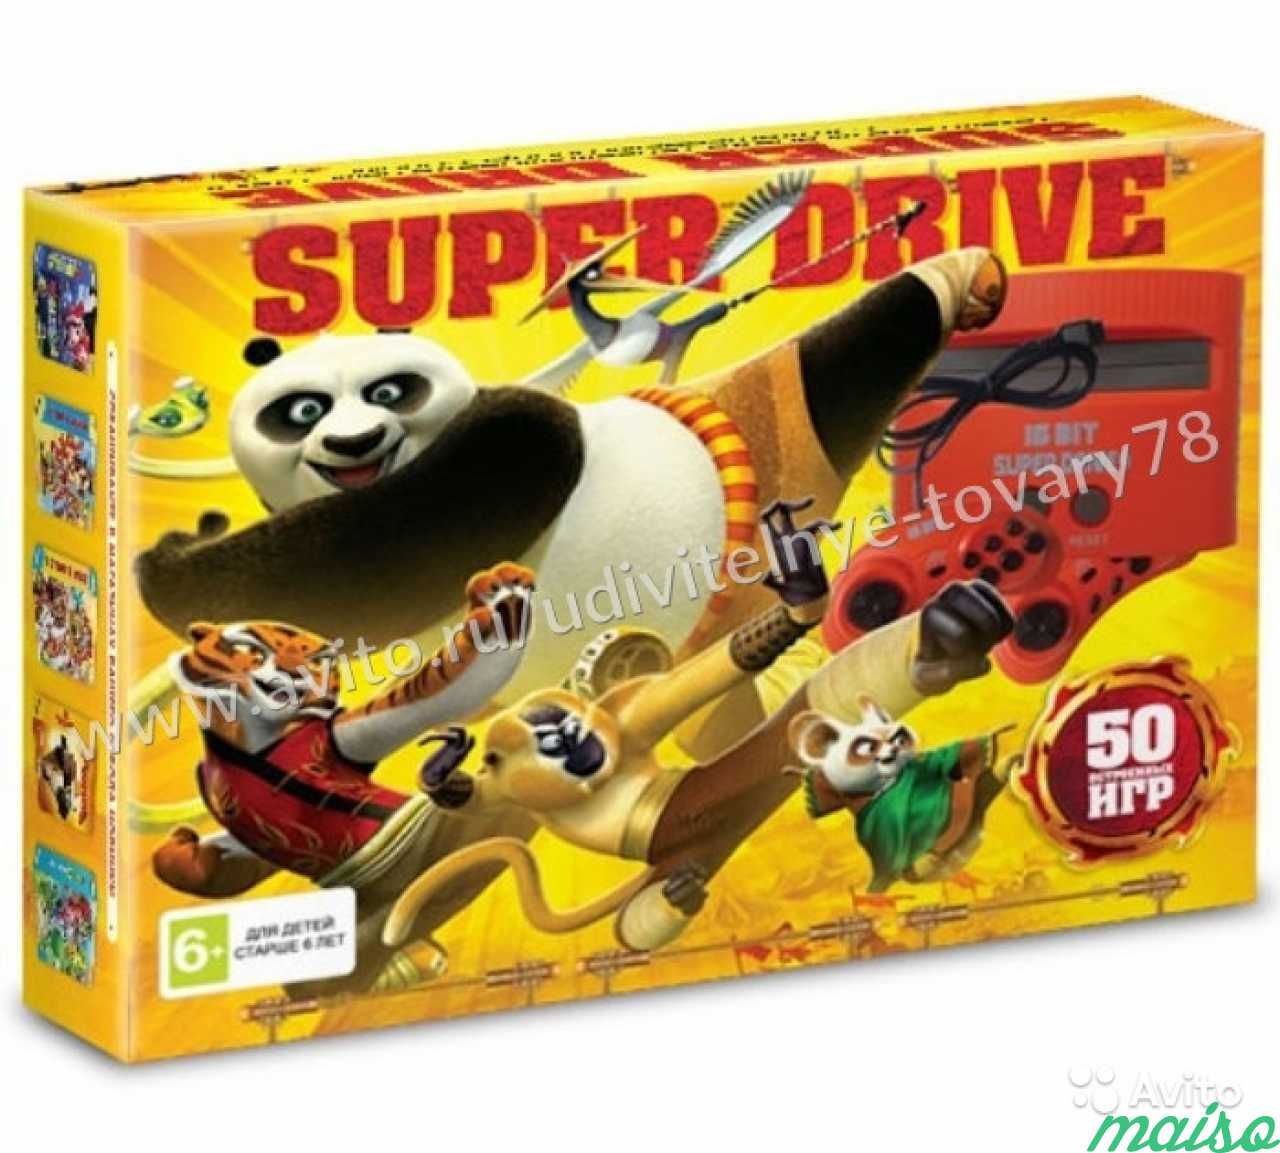 Сега Sega Super Drive Kung Fu Panda, 50 игр в 1 в Санкт-Петербурге. Фото 1